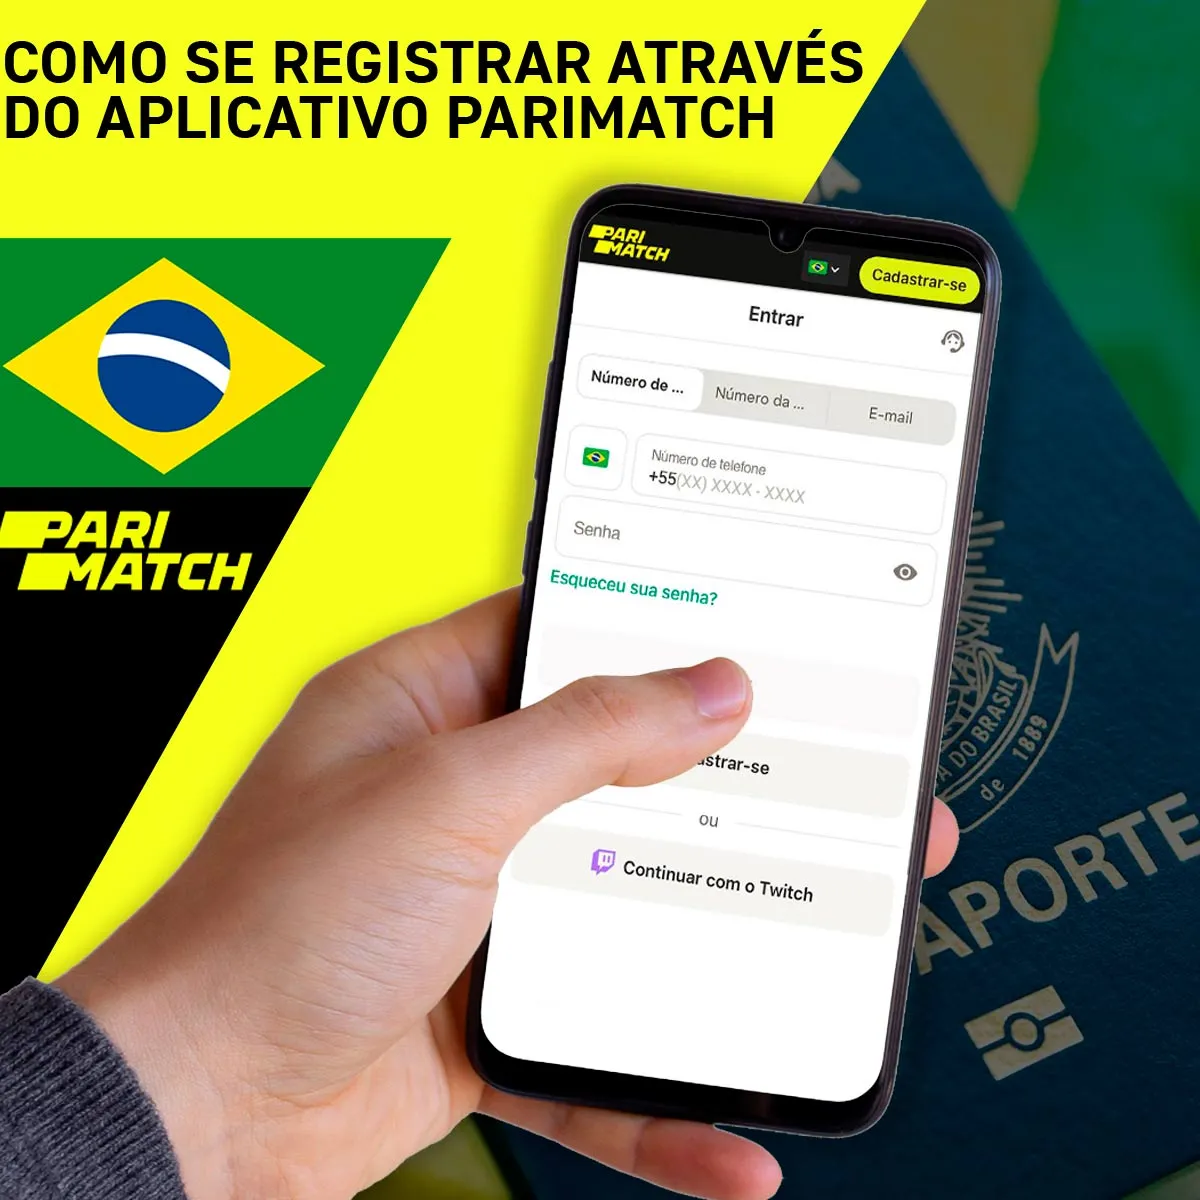 Registro no aplicativo móvel para Android da casa de apostas Parimatch no Brasil